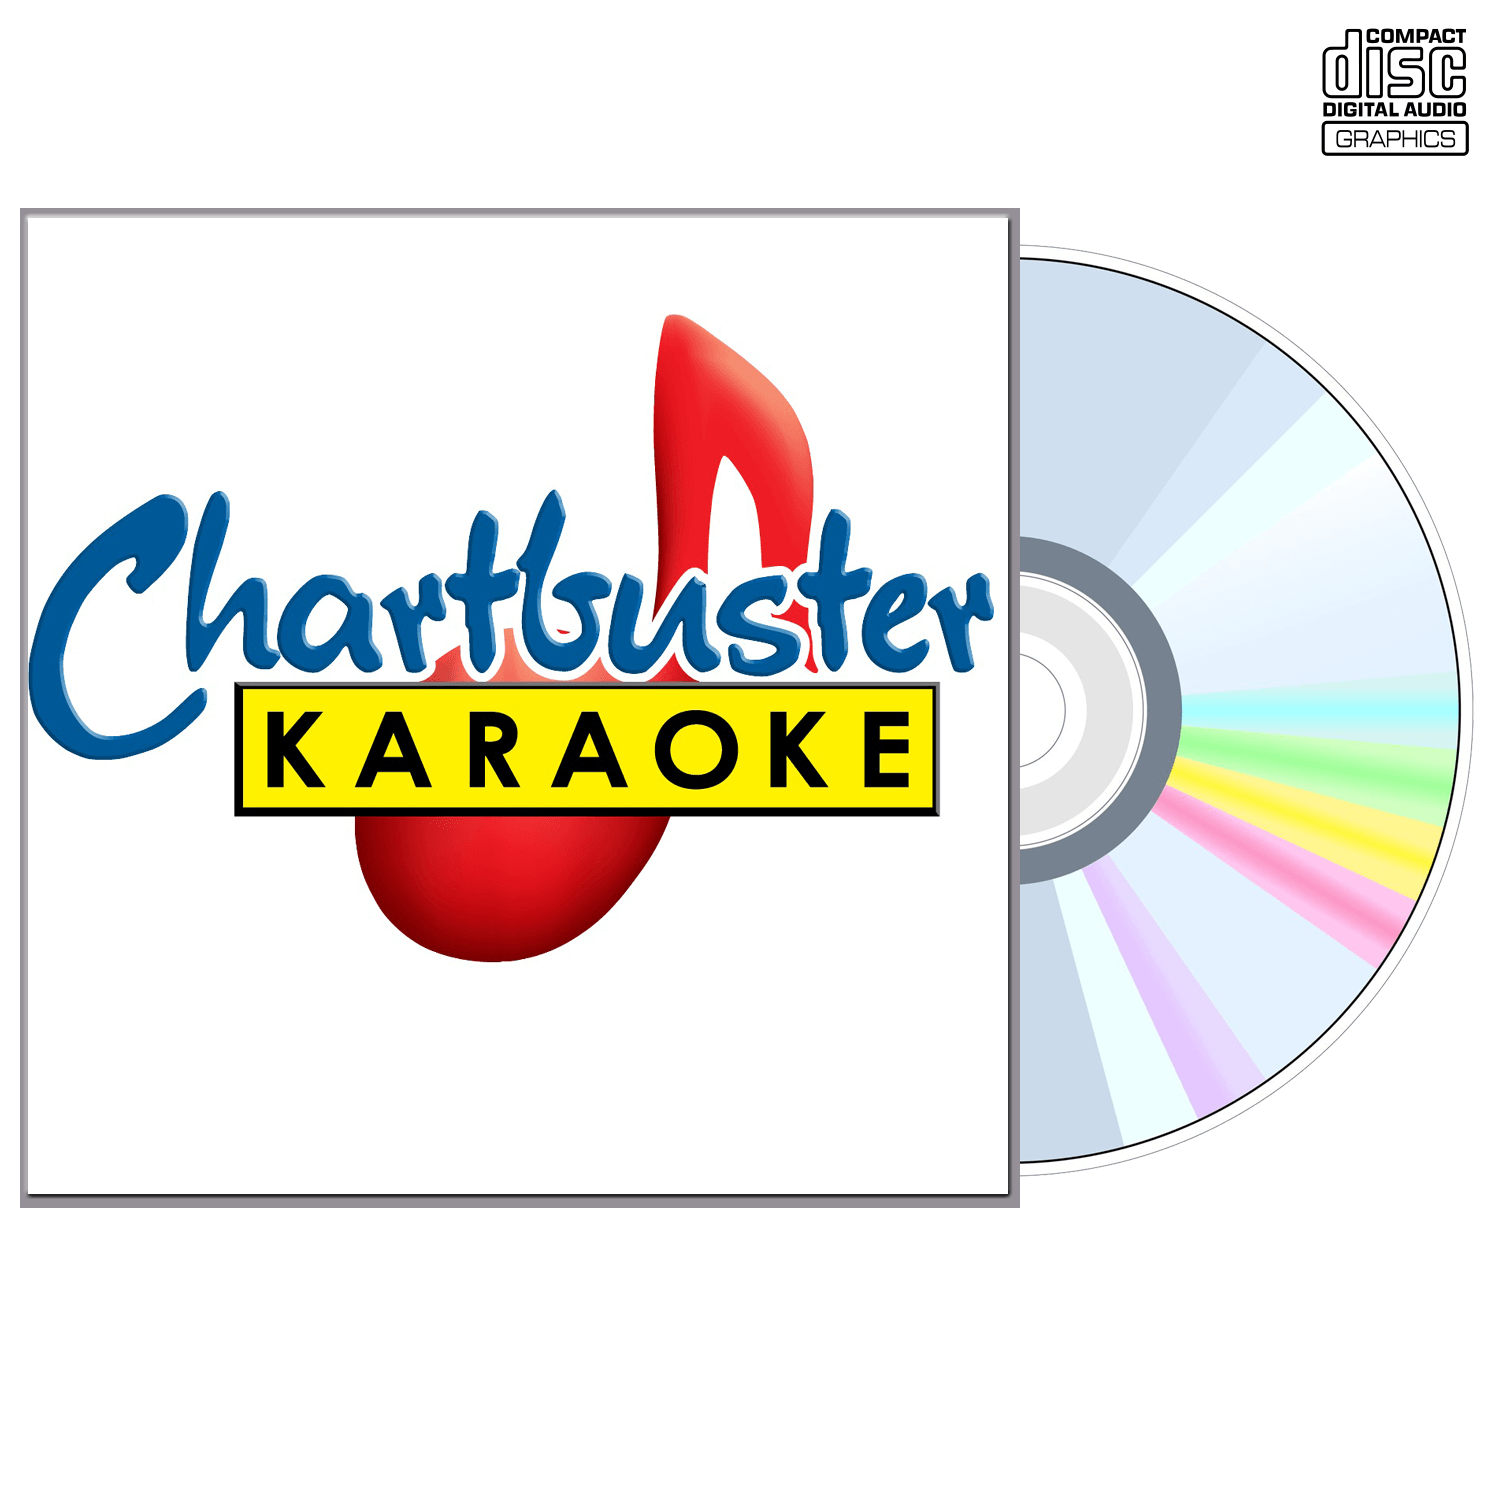 Joe - CD+G - Chartbuster Karaoke - Karaoke Home Entertainment